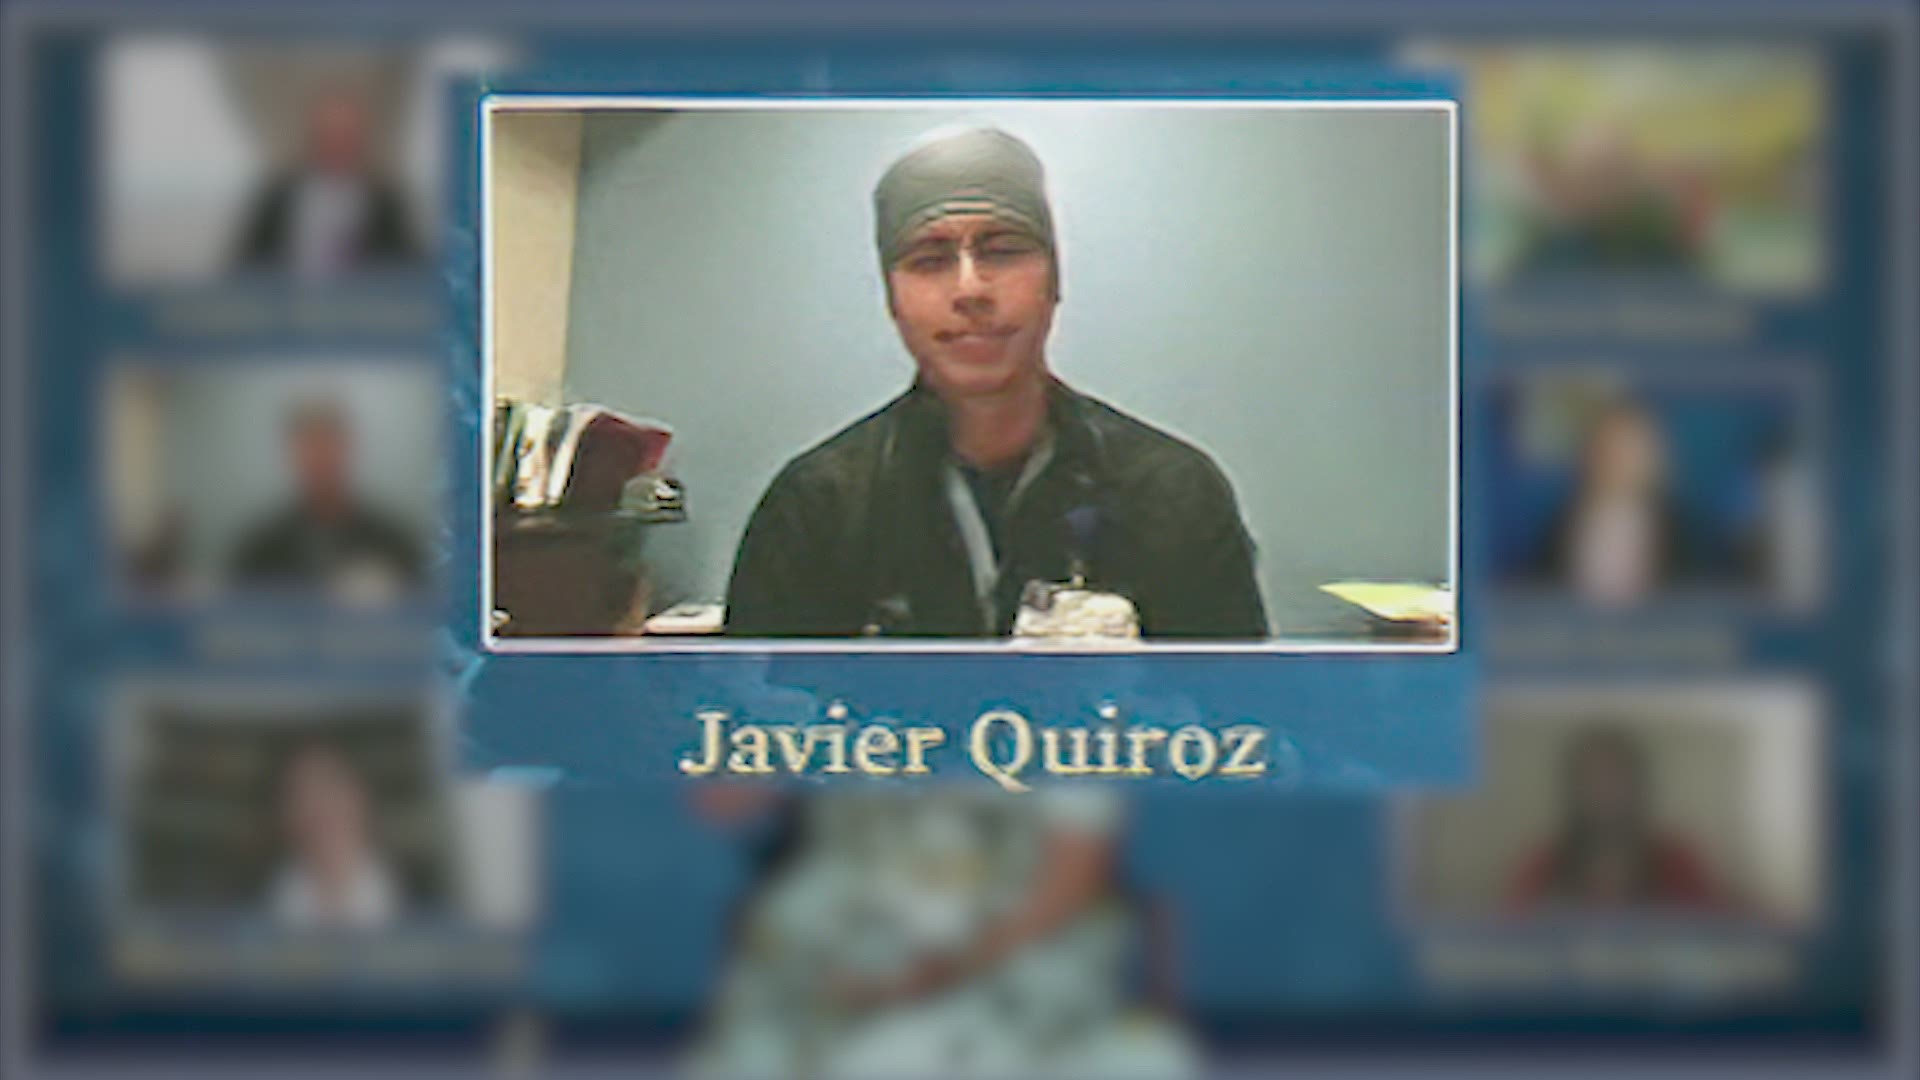 Javier Quiroz Castro is a nurse at Houston Methodist West.